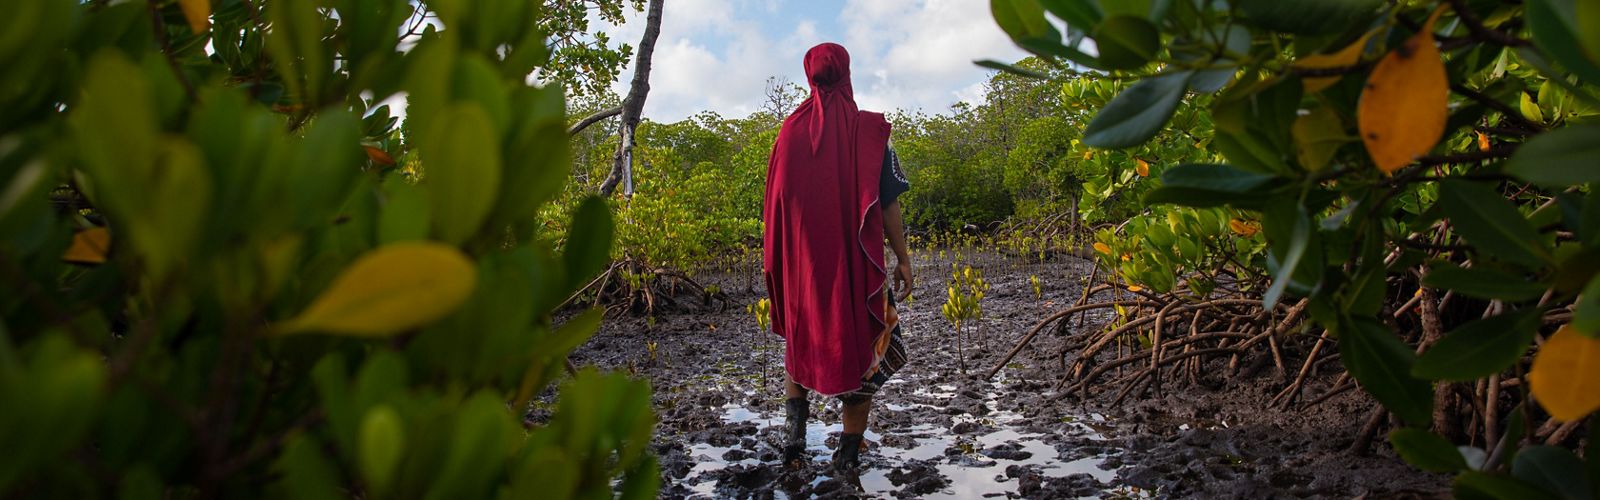 Person standing in mangroves in Kenya. 